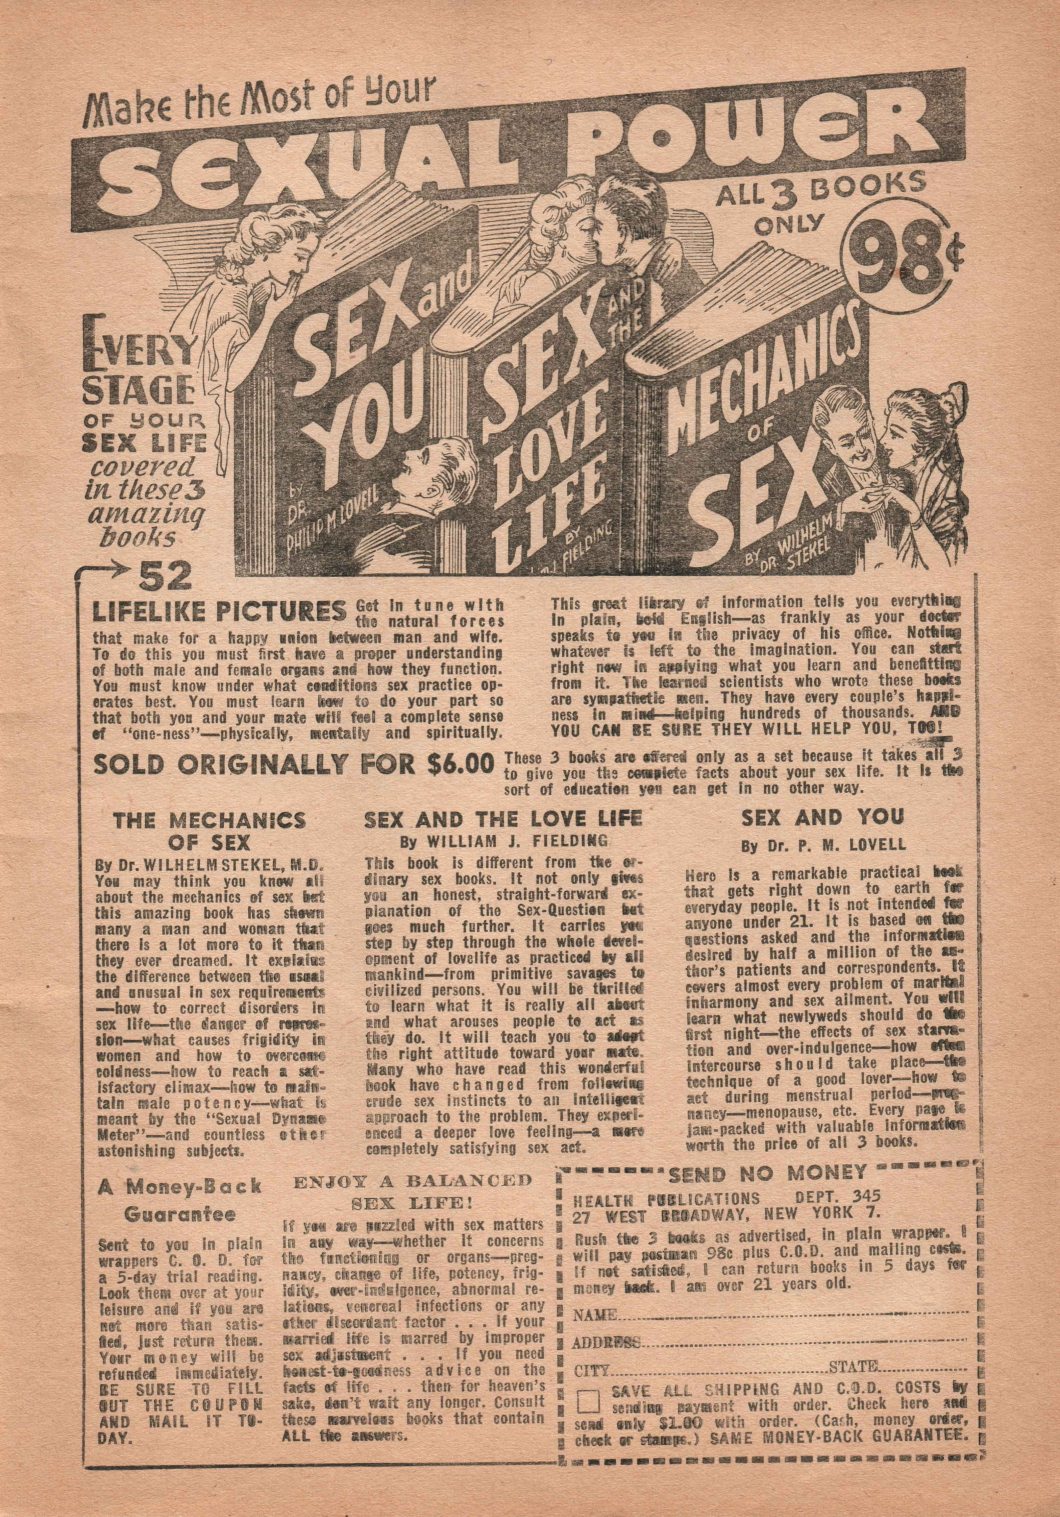 Sexology March 1945 D.D. Teoli Jr. A.C. (57)